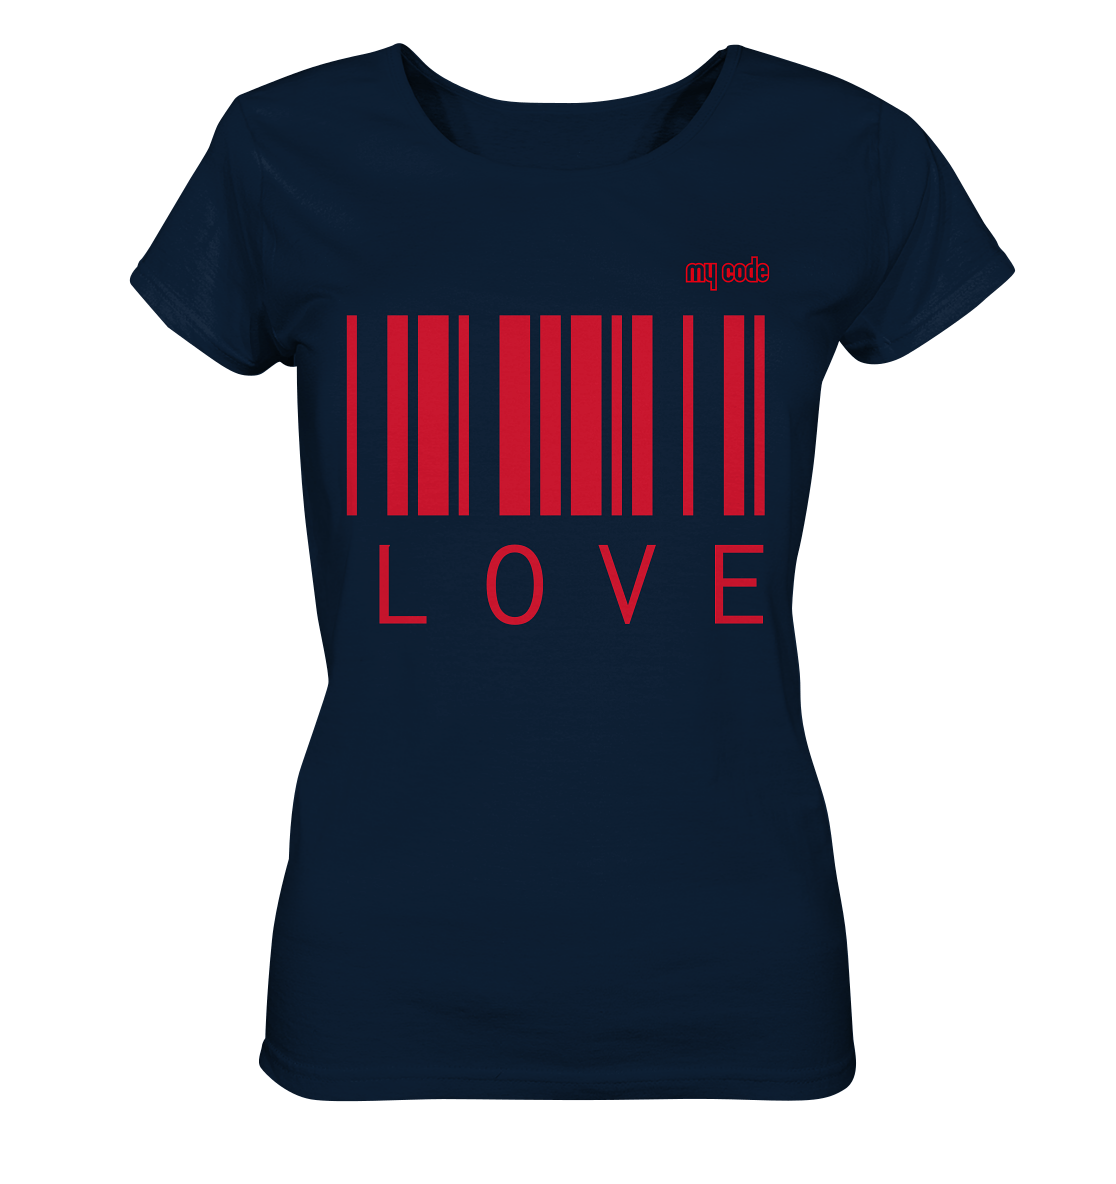 My code Love Statement Shirt in navy